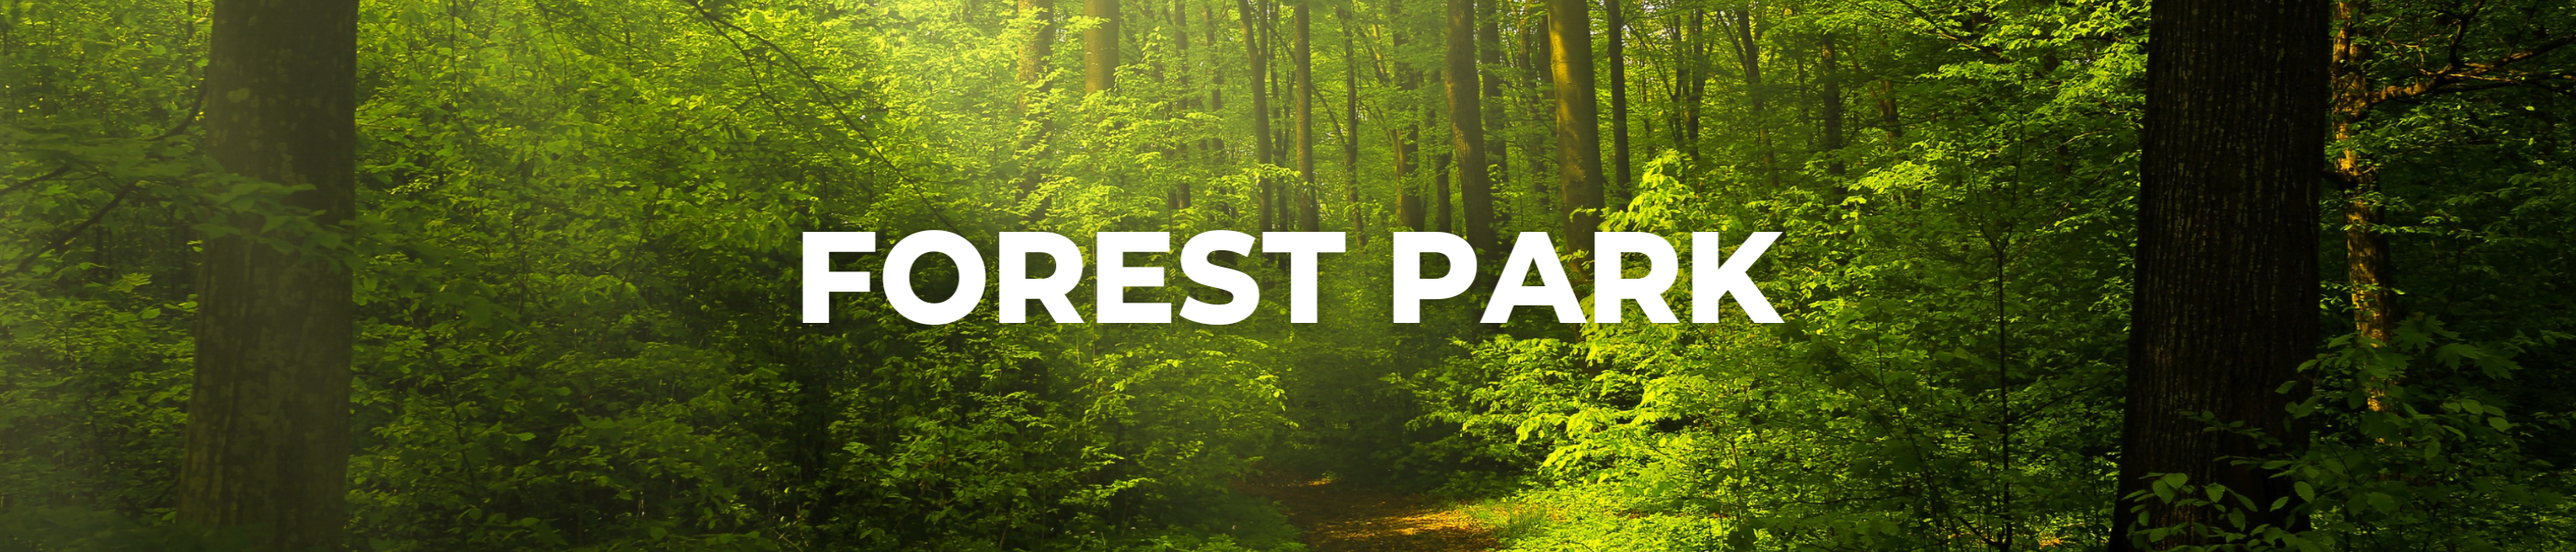 blog header, forest park